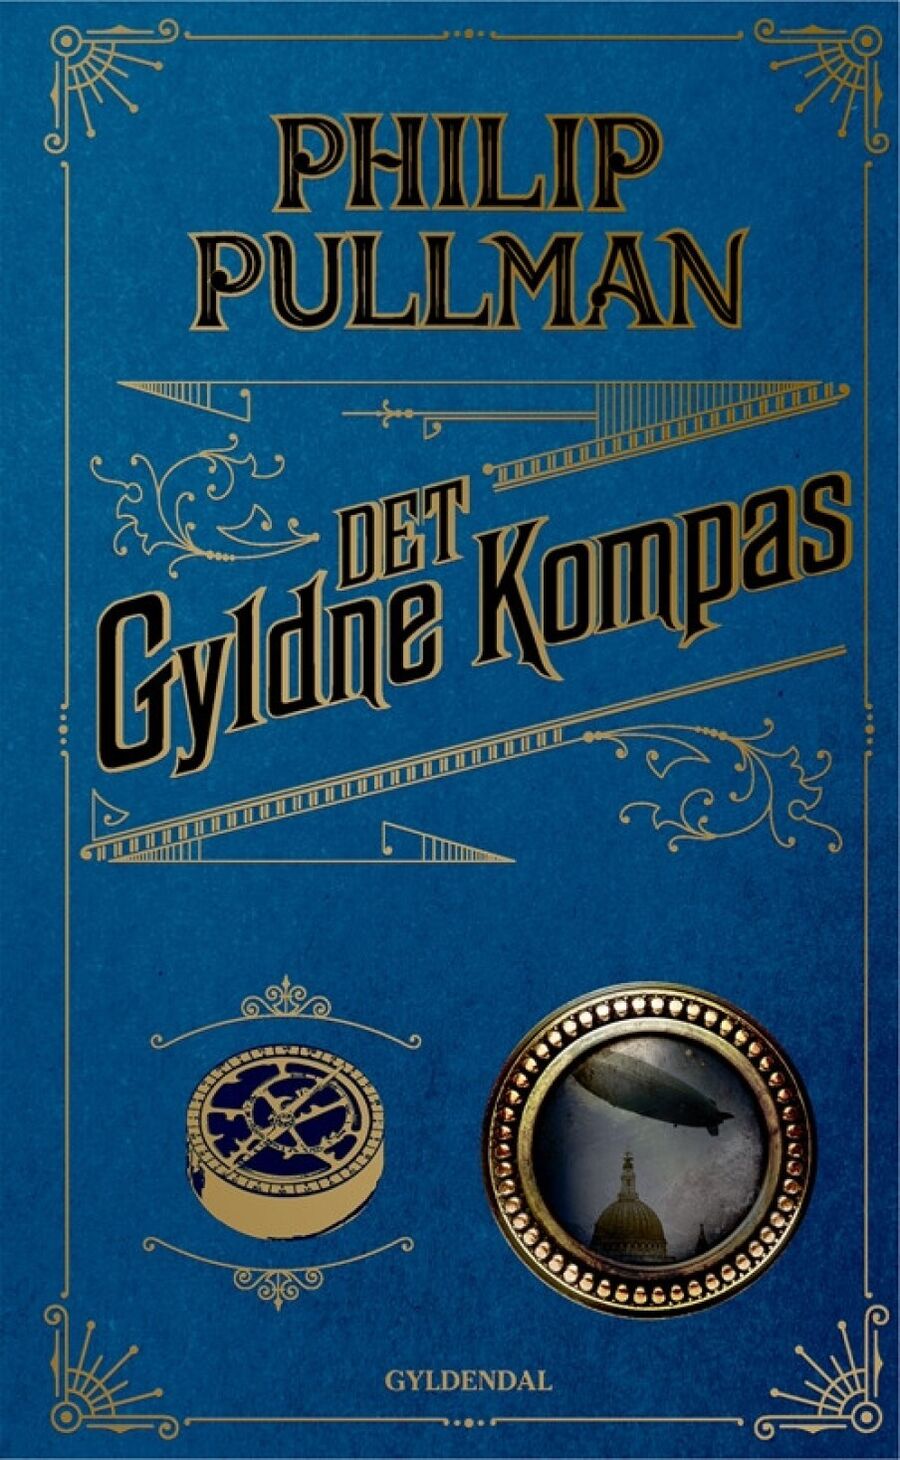 Det gyldne kompas af Philip Pullman